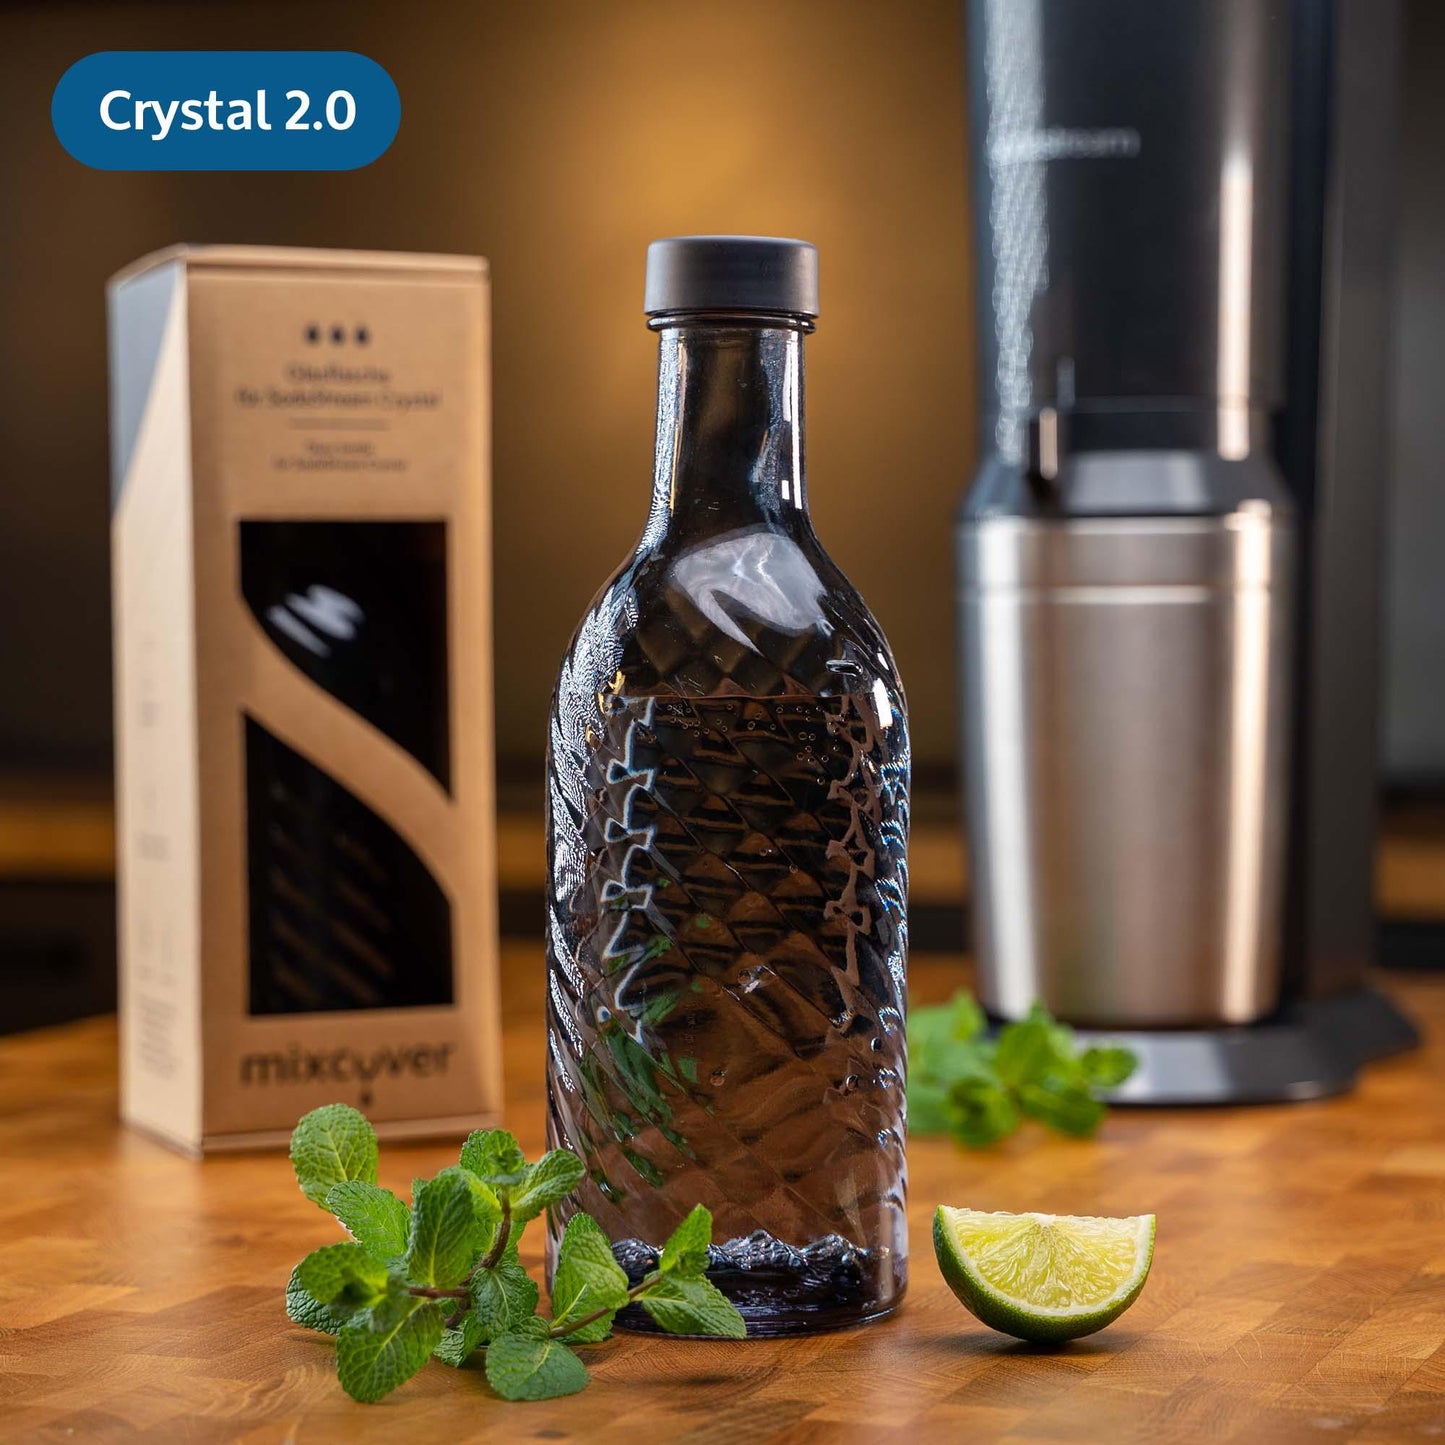 mixcover Glasflasche kompatibel mit SodaStream Crystal 2.0 mit 10% mehr Volumen Dark Grey - Mixcover - Mixcover